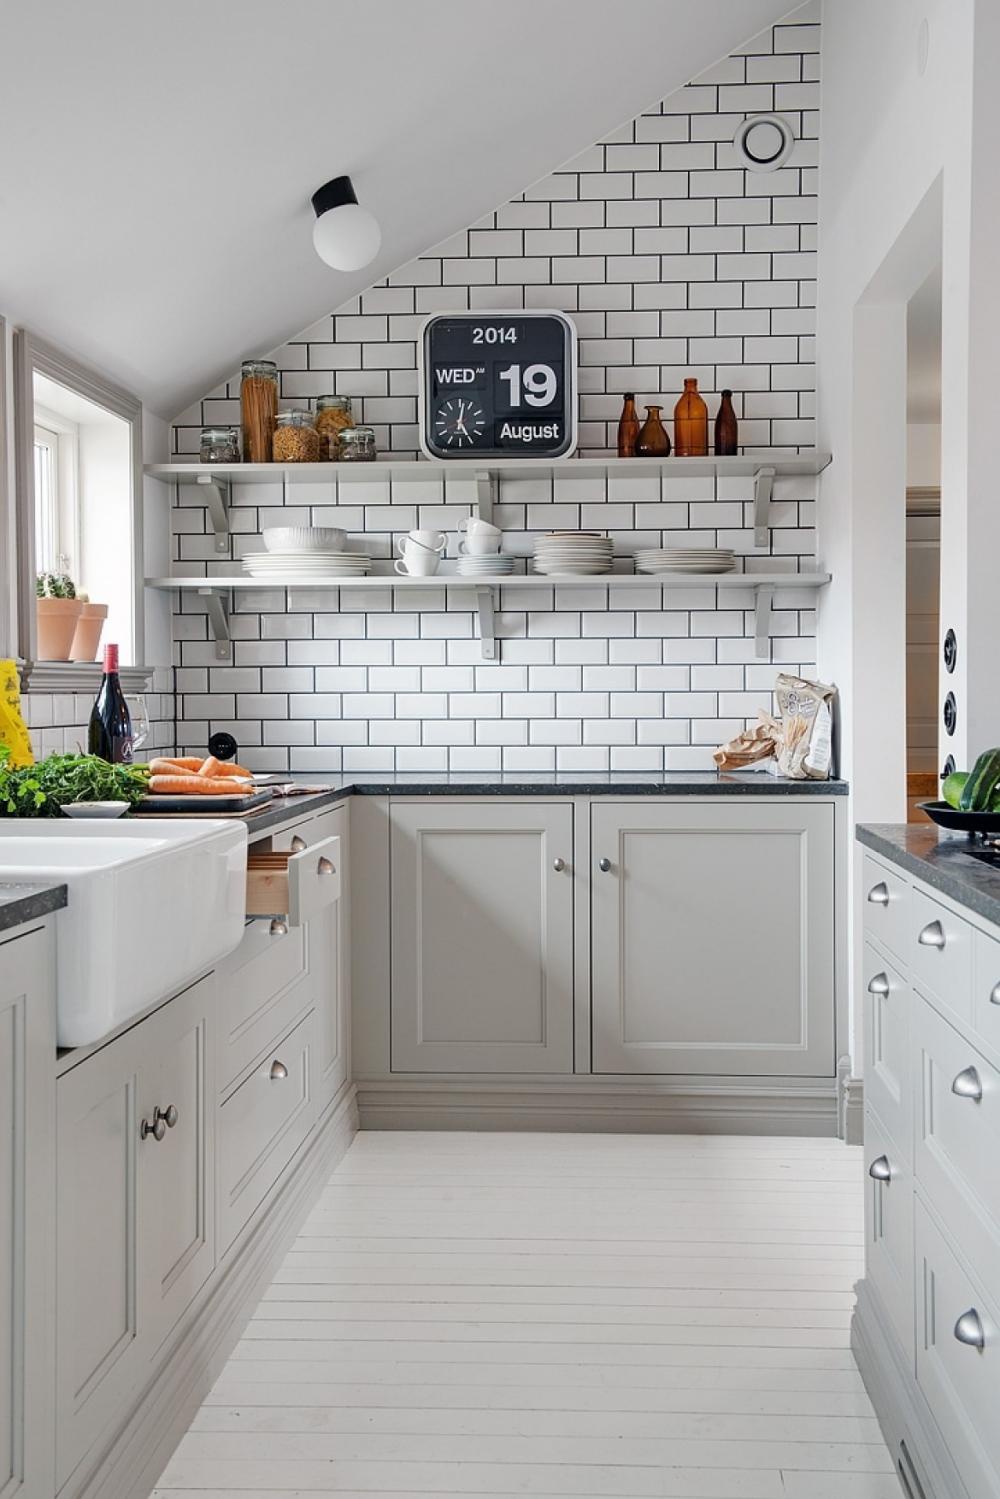 Những mẫu phòng bếp hiện đại phù hợp với không gian căn hộ nhỏ